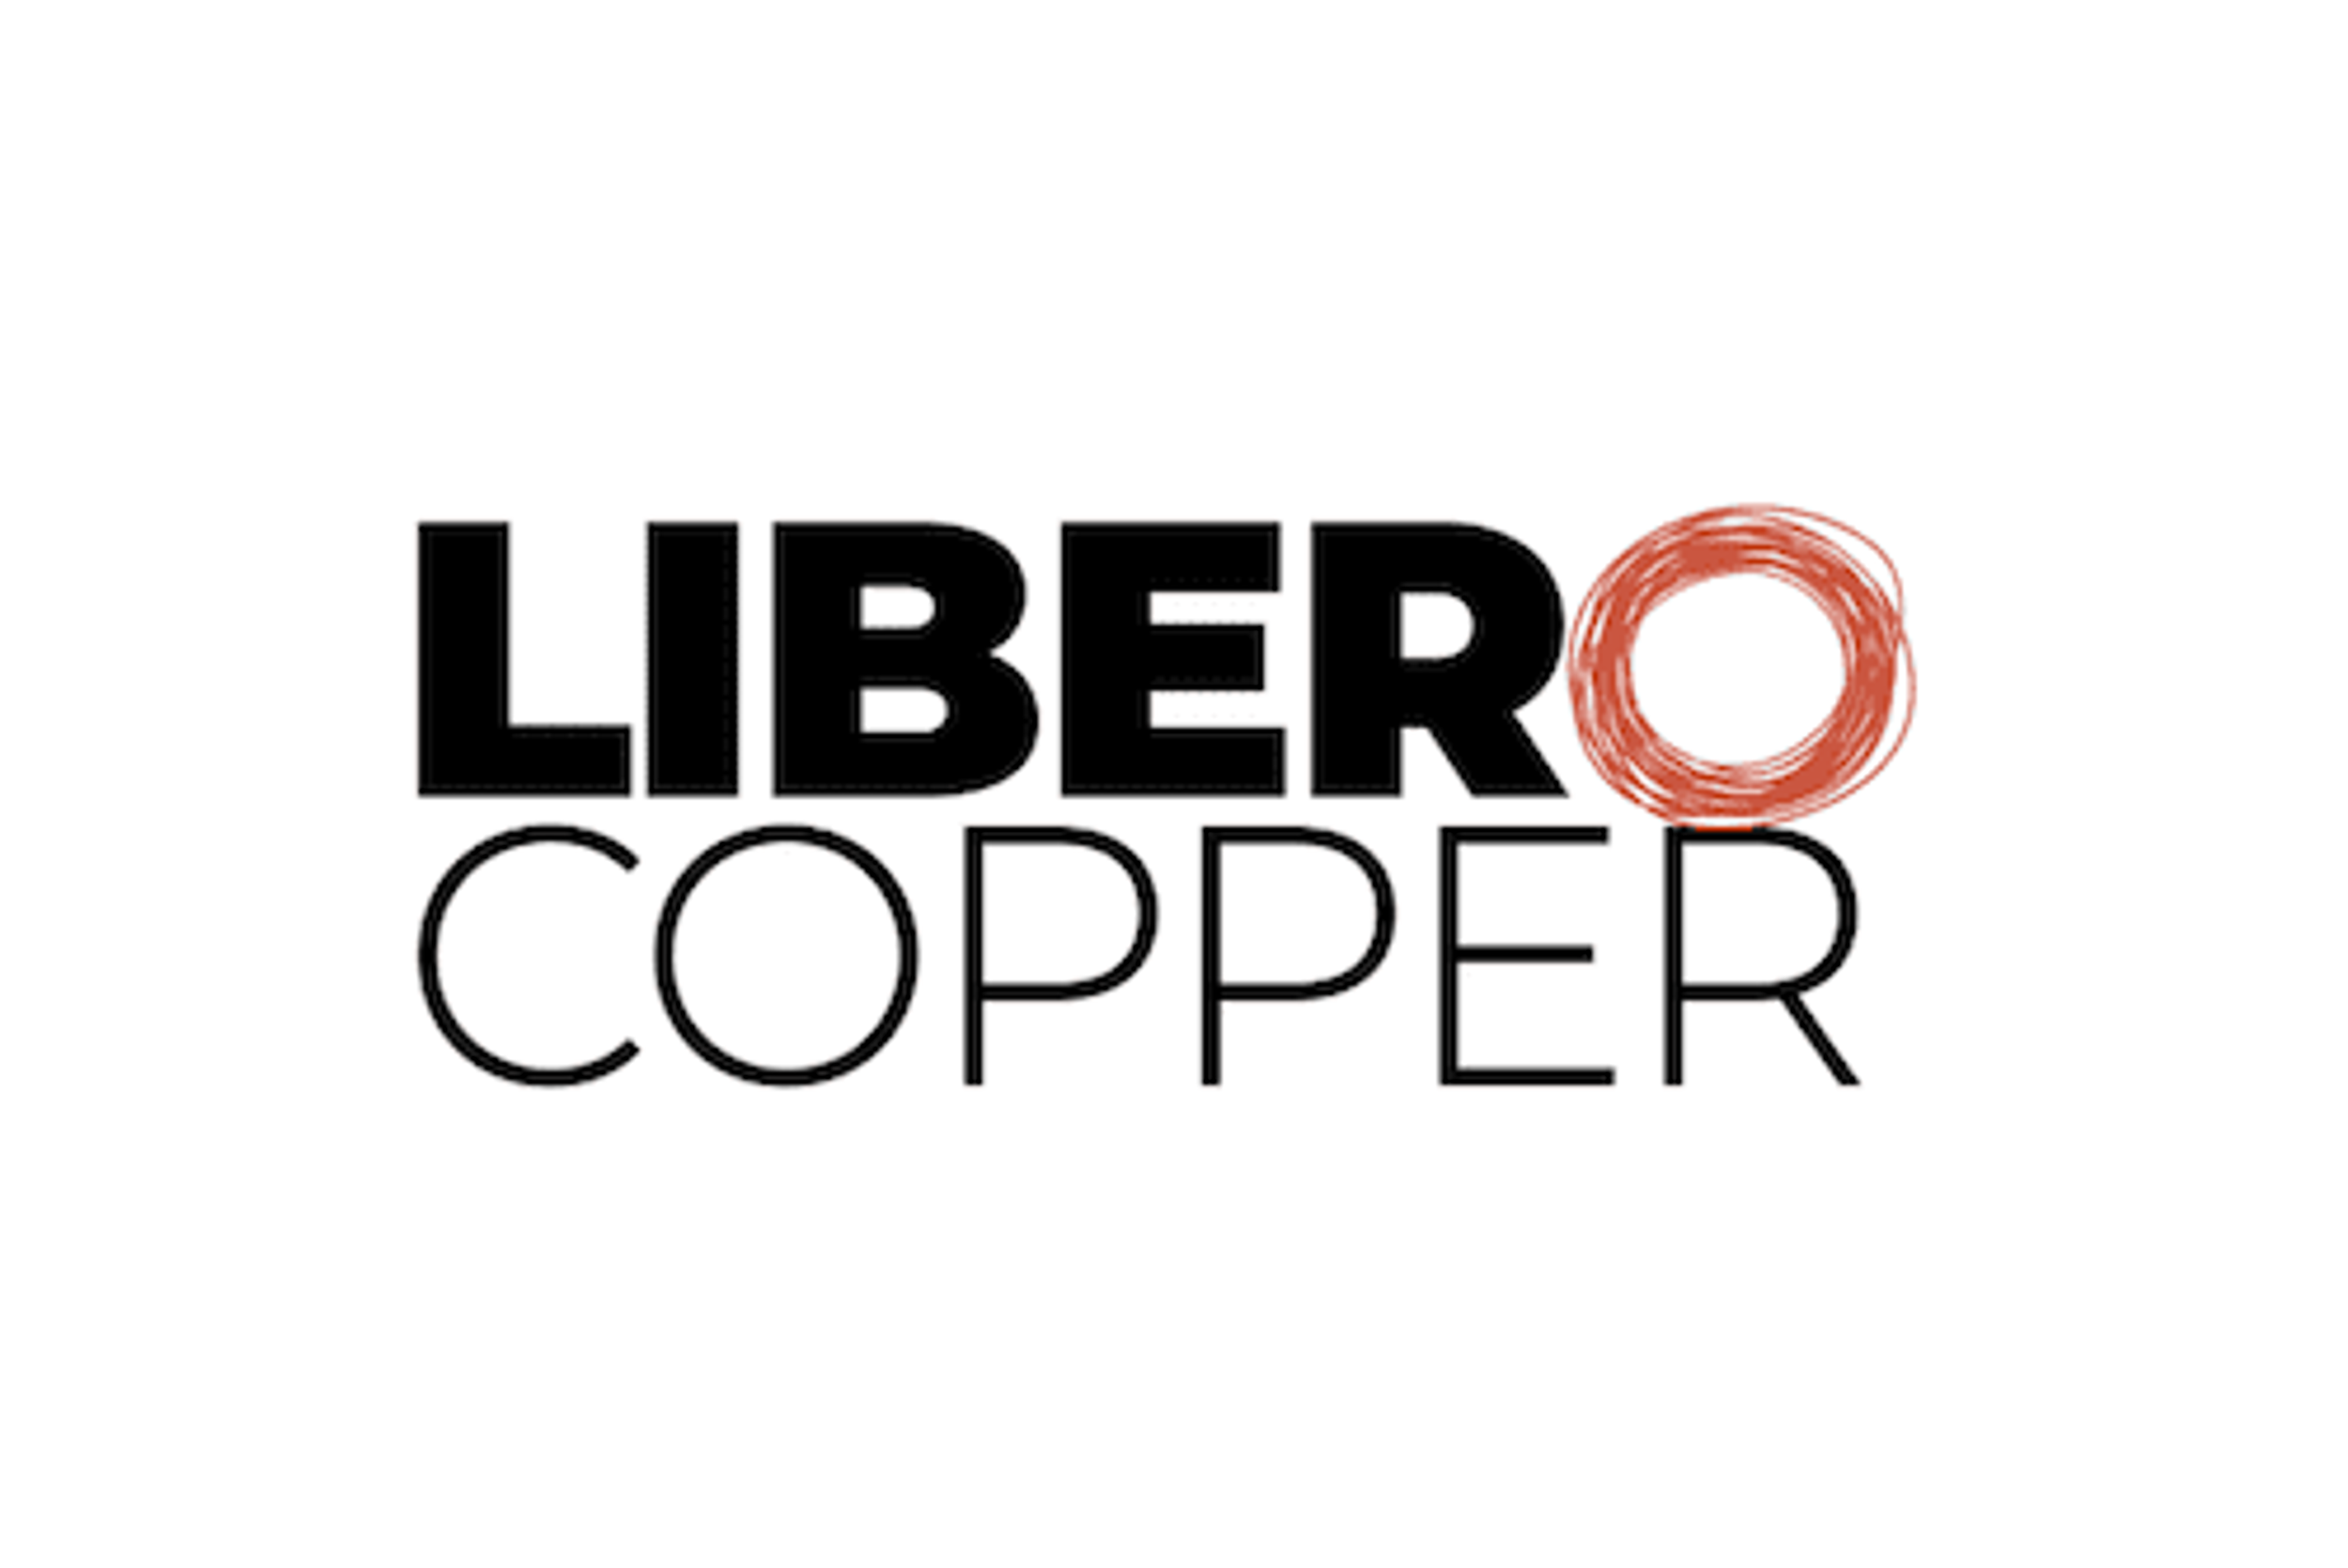 LIBERO Copper CLOSES $8,300,000 FINANCING AND APPOINTS MICHAEL SUNUNU DIRECTOR